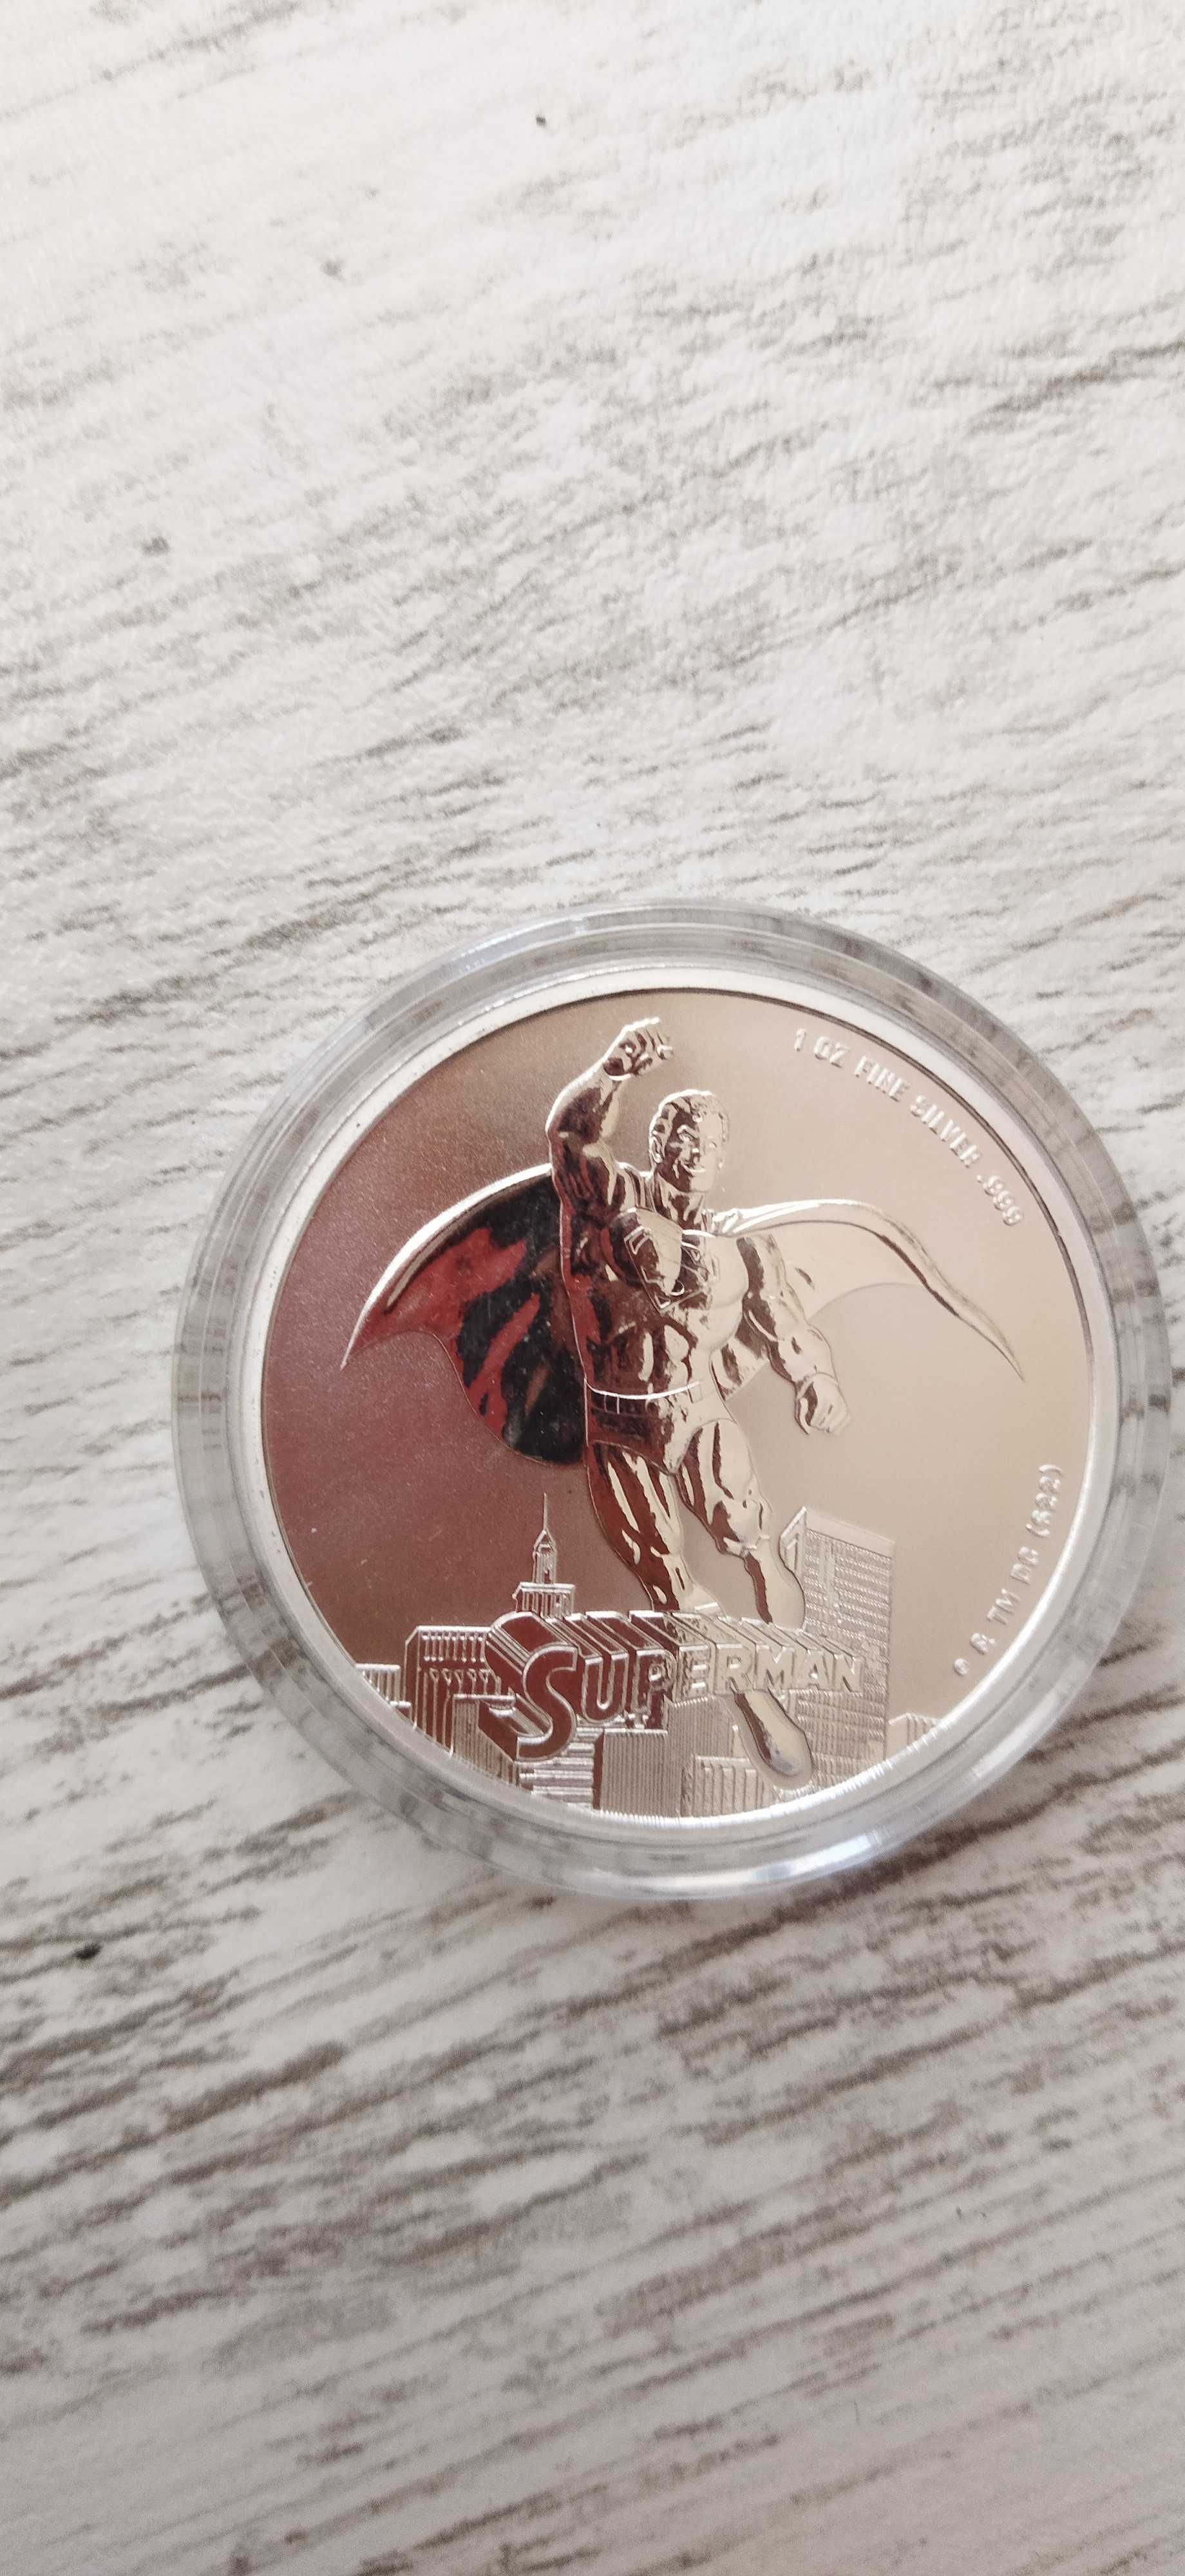 Сребърна монета 1oz superman инвестиционно сребро